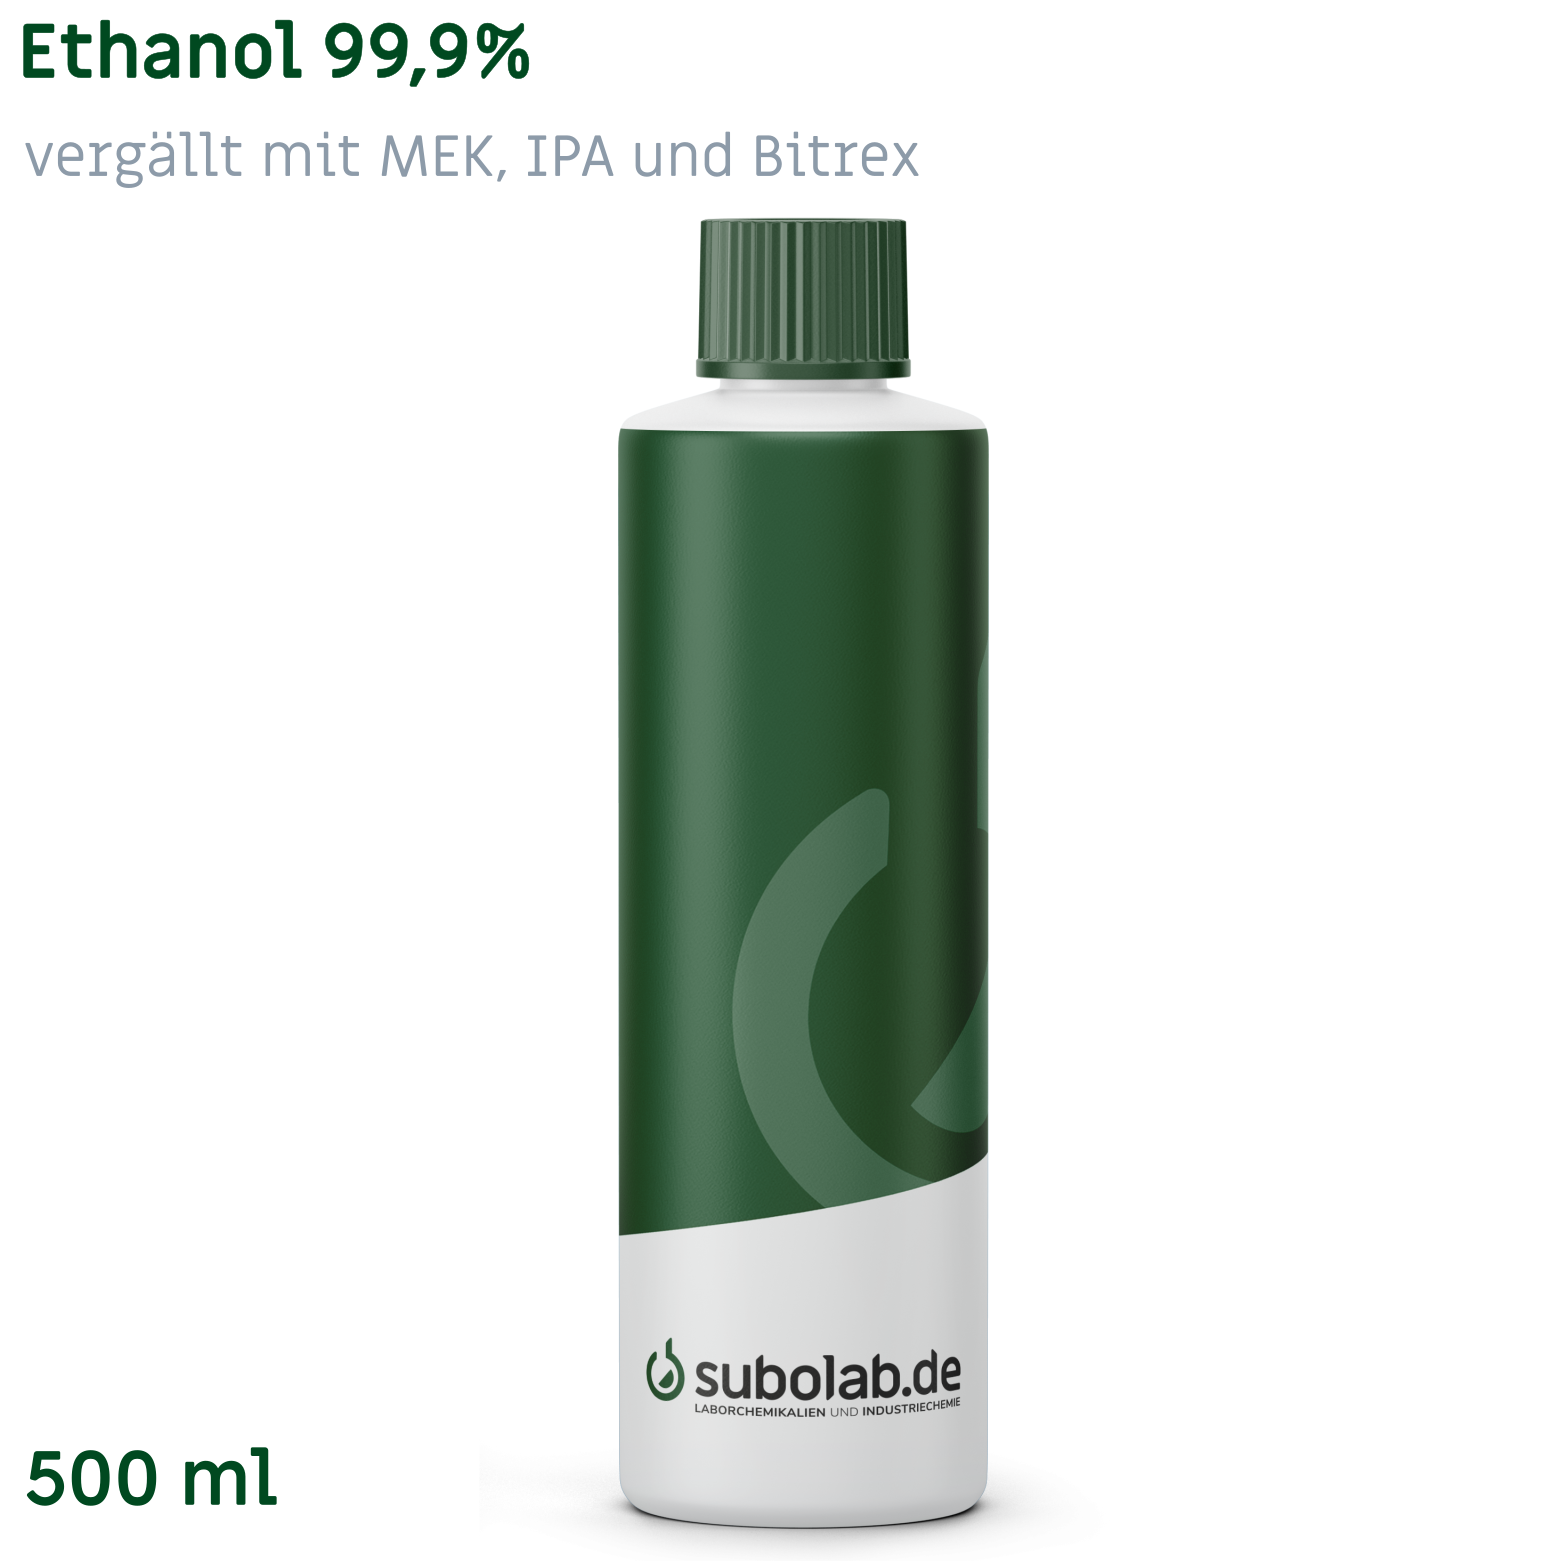 Bild von Ethanol 99,9% vergällt mit MEK, IPA und Bitrex (500 ml)